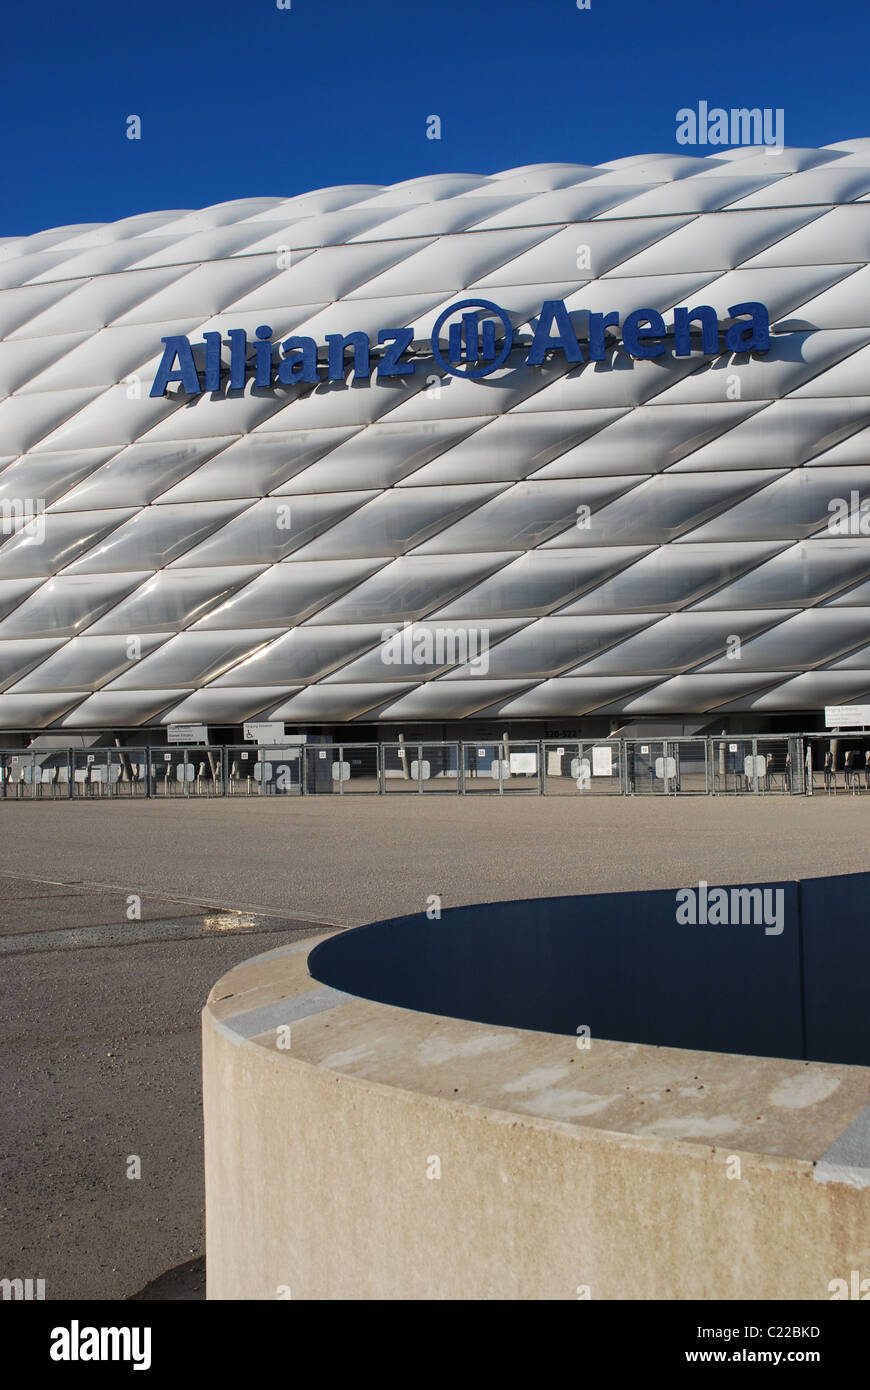 Stadio Allianz Arena di Monaco di Baviera Foto Stock